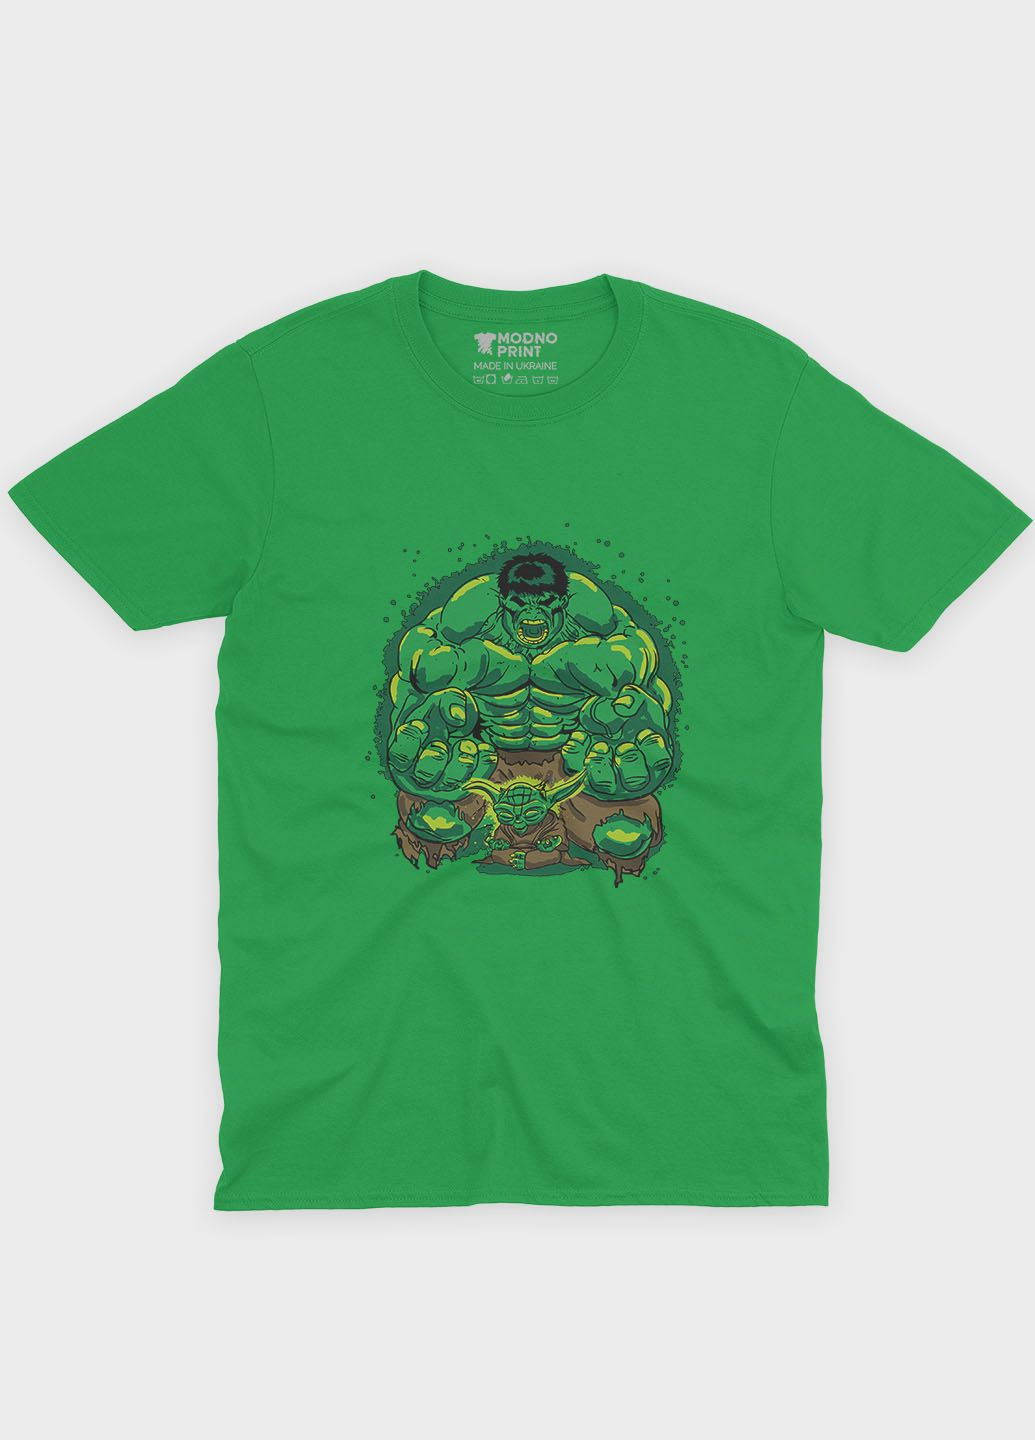 Зелена демісезонна футболка для хлопчика з принтом супергероя - халк (ts001-1-keg-006-018-003-b) Modno